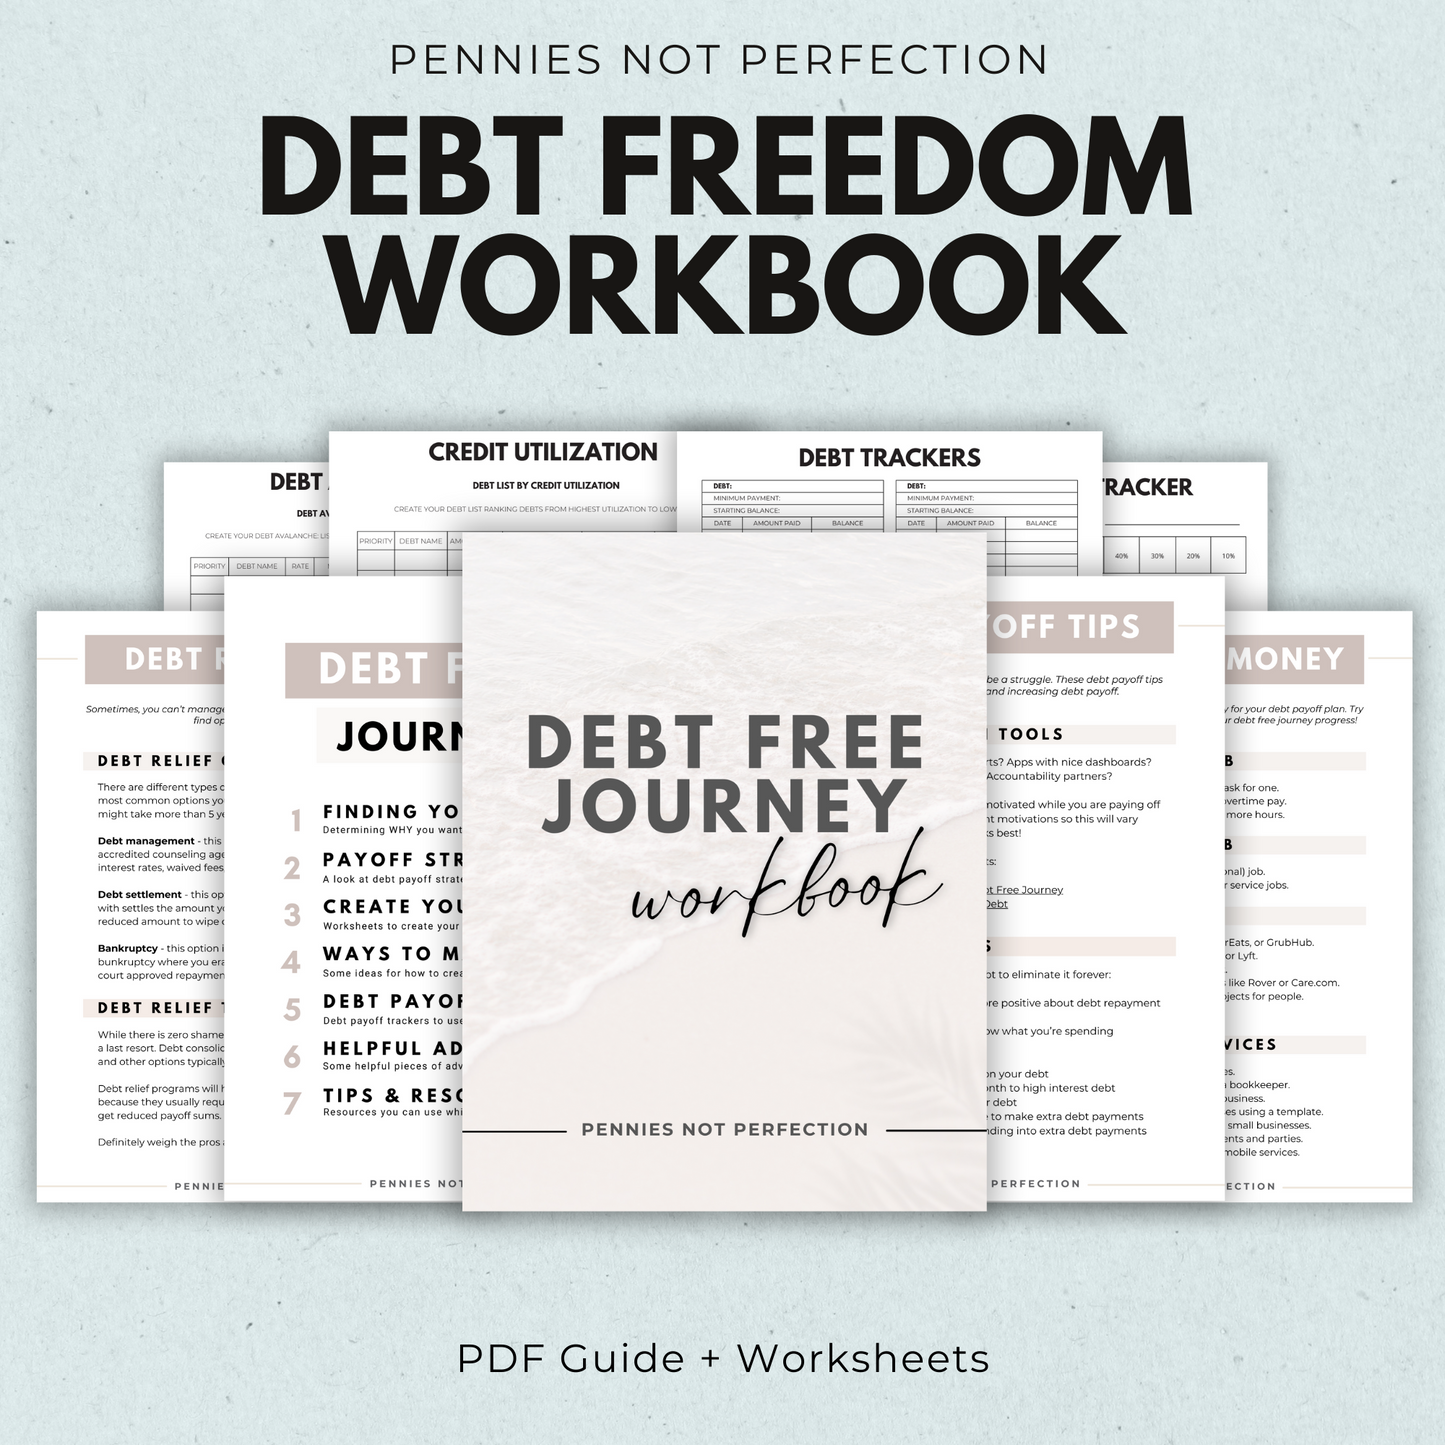 Debt Freedom WorkBook